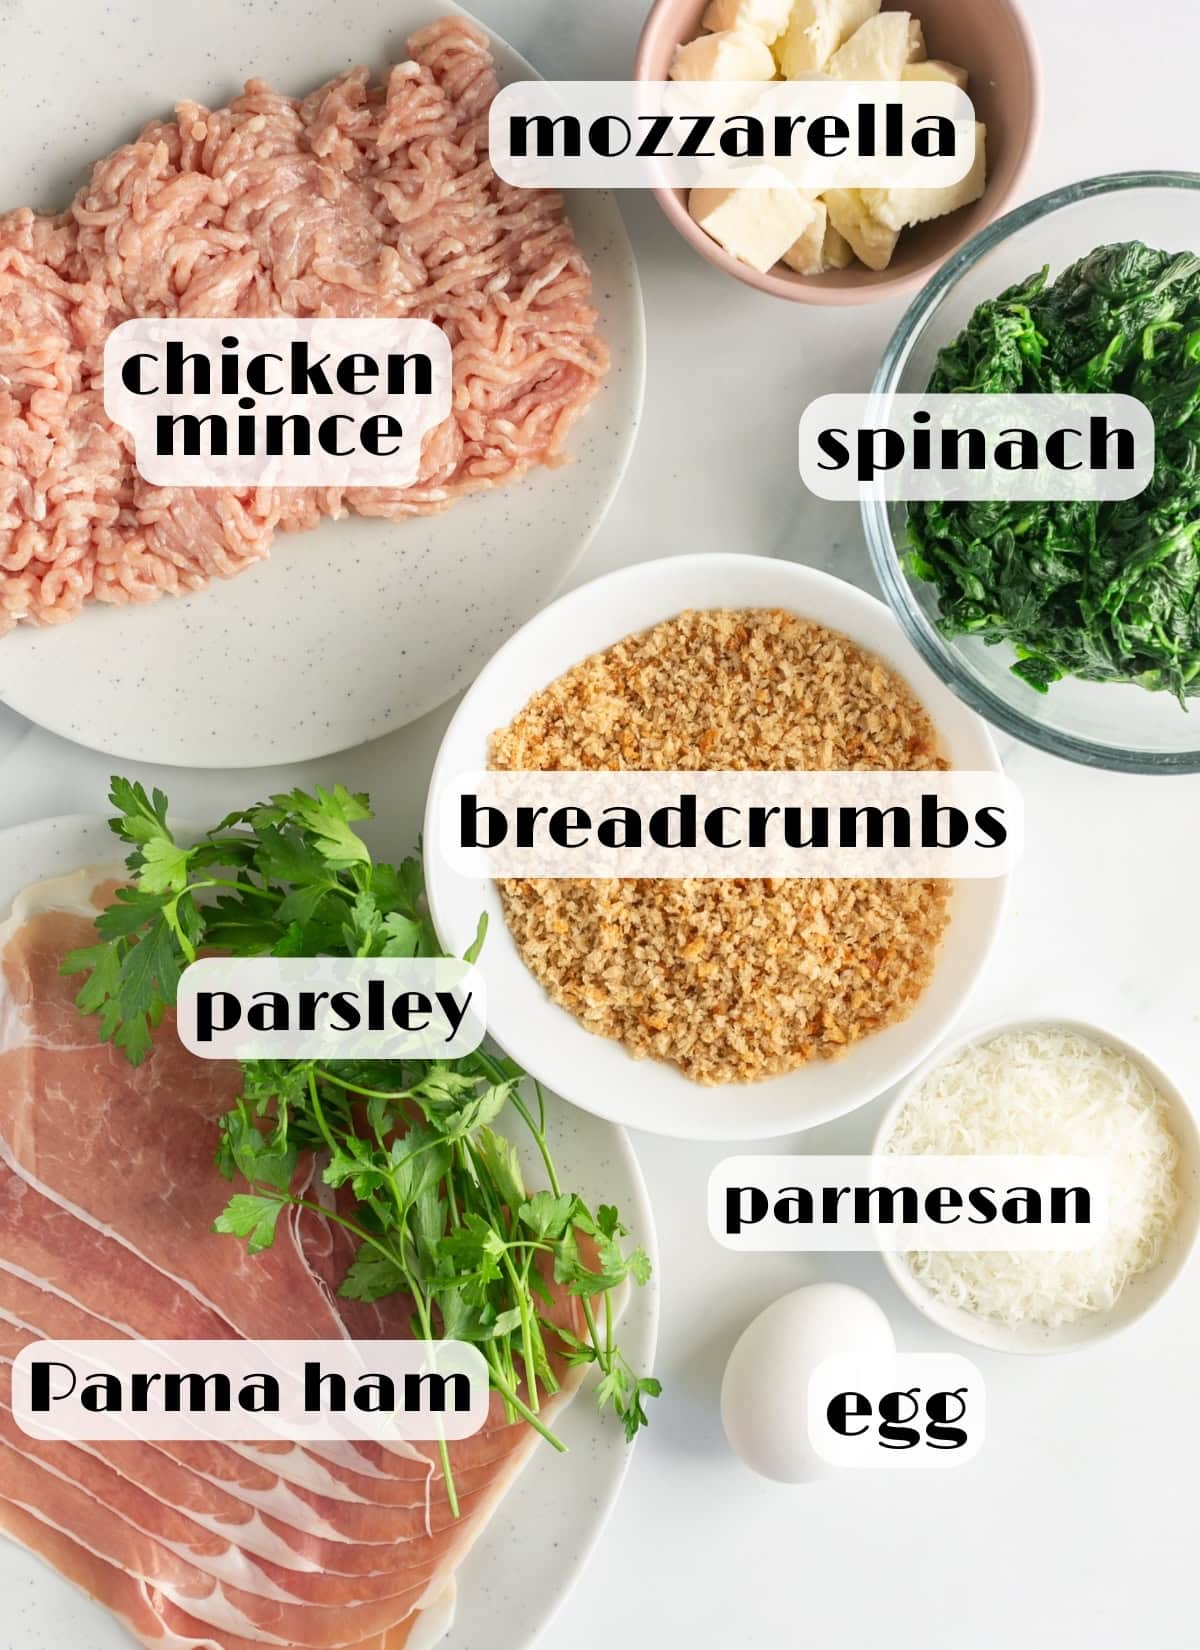 chicken meatloaf ingredients: ground chicken, breadcrumbs, parsley, egg, parmesan cheese, parma ham, spinach, mozzarella.